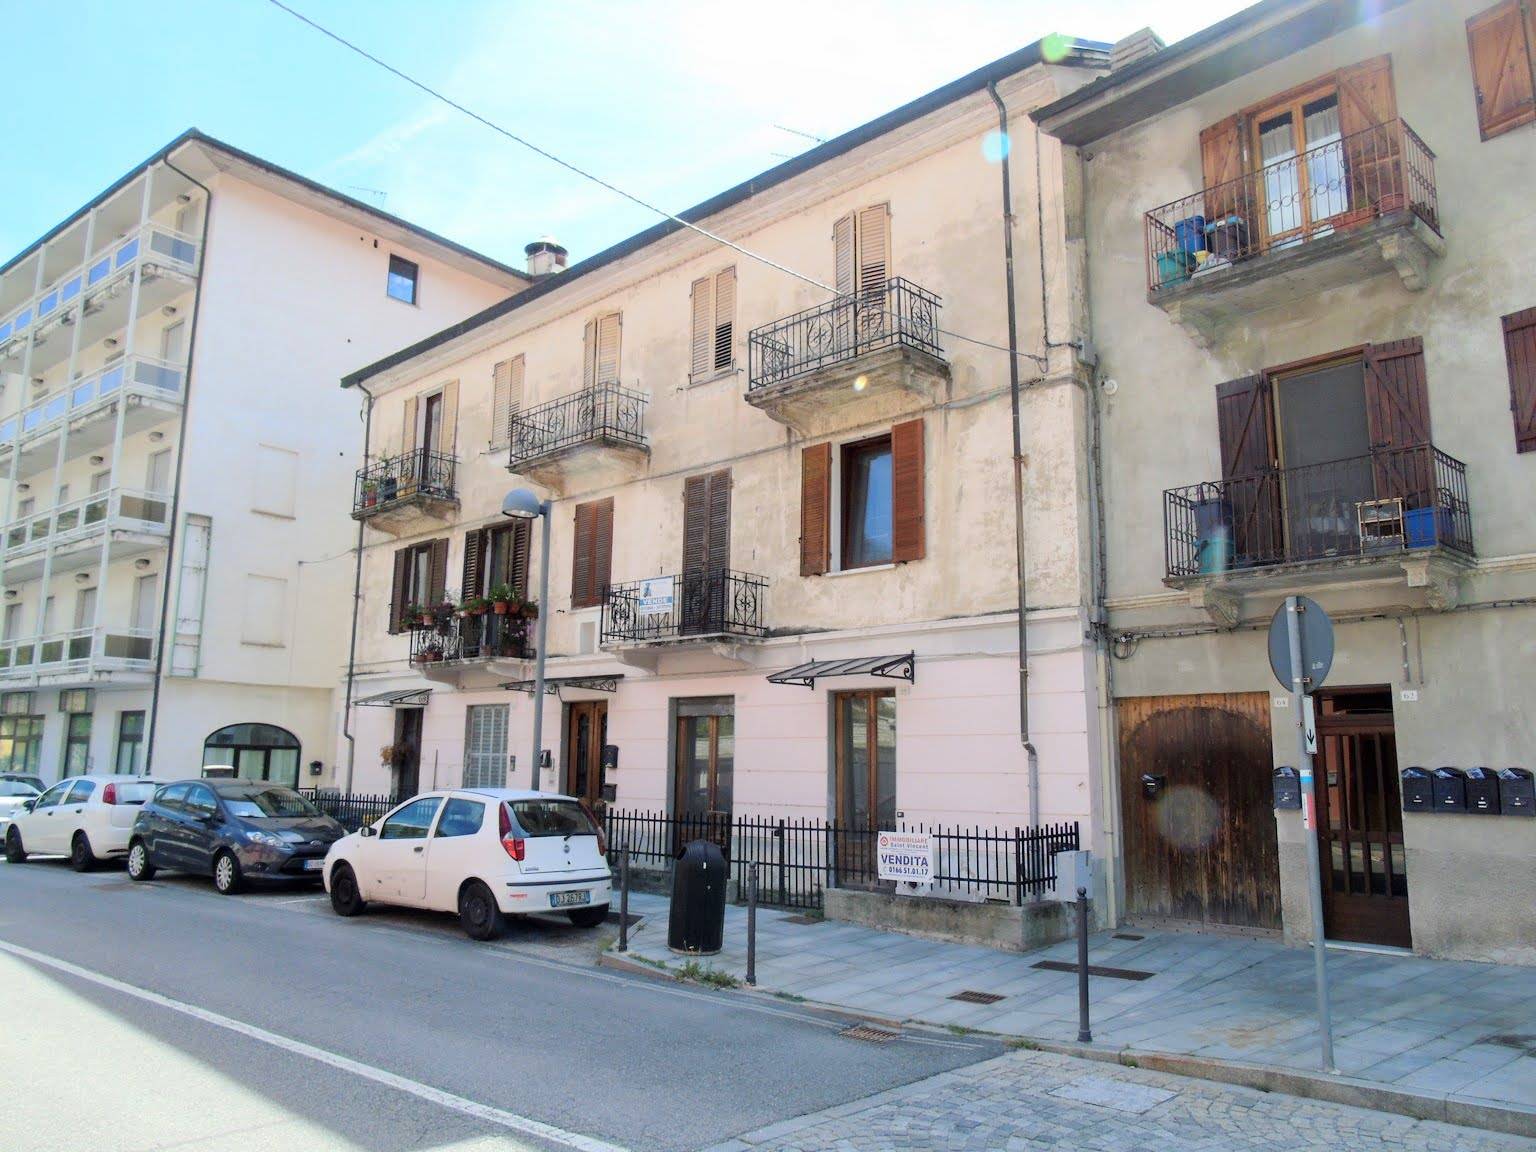 Appartamento in vendita a Saint-Vincent, 2 locali, prezzo € 64.000 | PortaleAgenzieImmobiliari.it